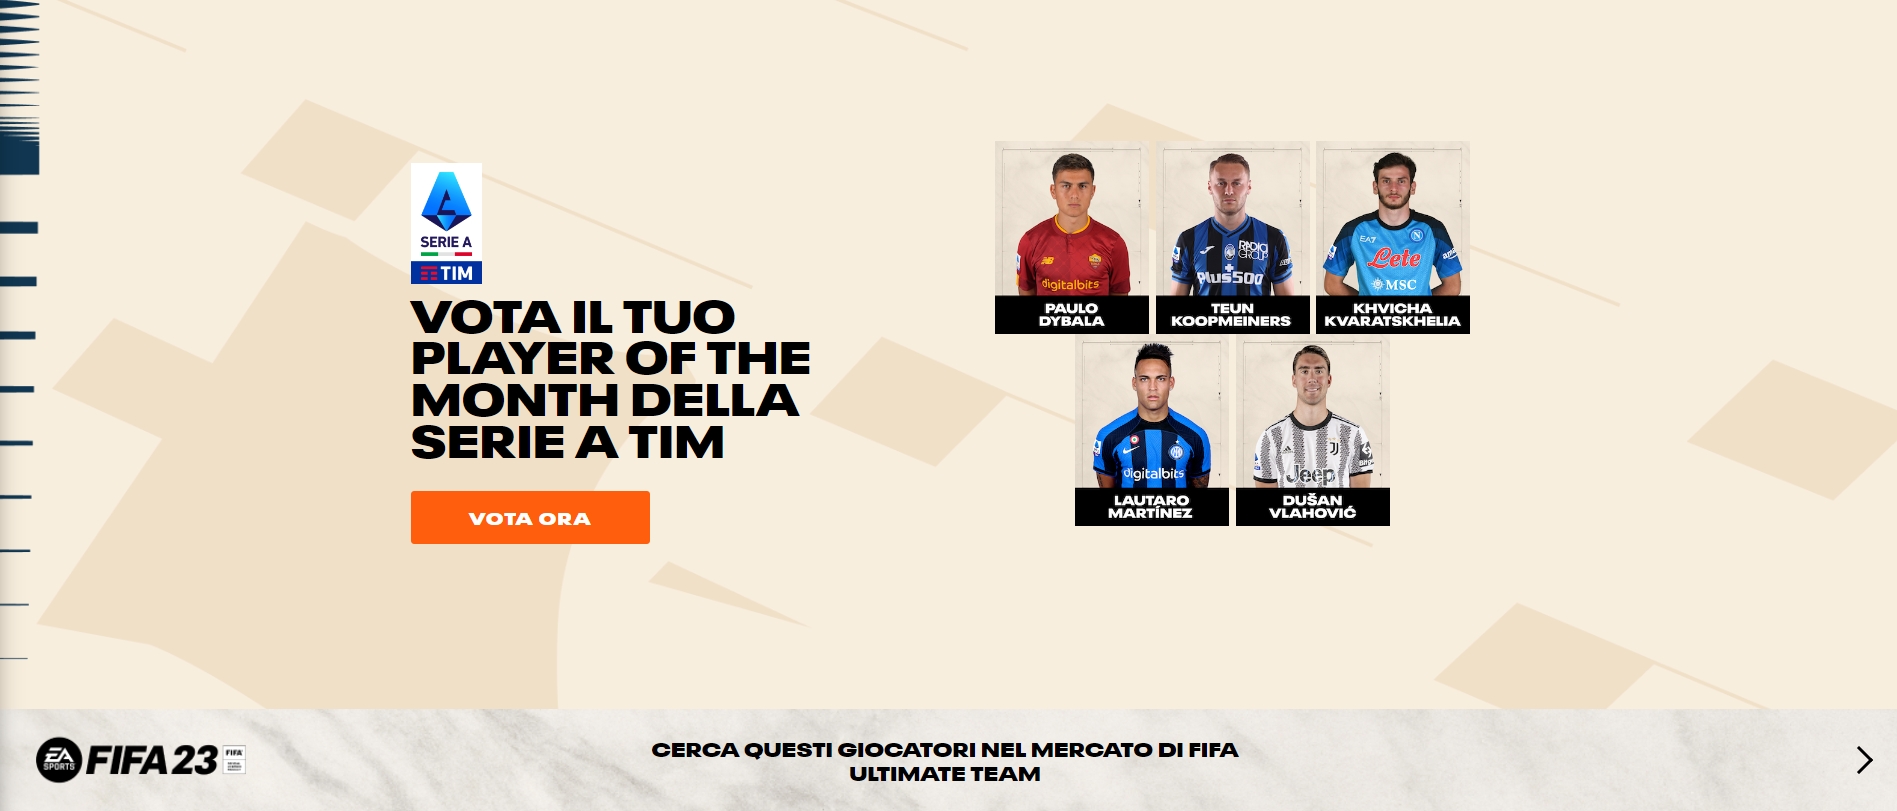 意甲9月最佳球员候选:迪巴拉&劳塔罗&克瓦拉茨赫利亚&dv9在列